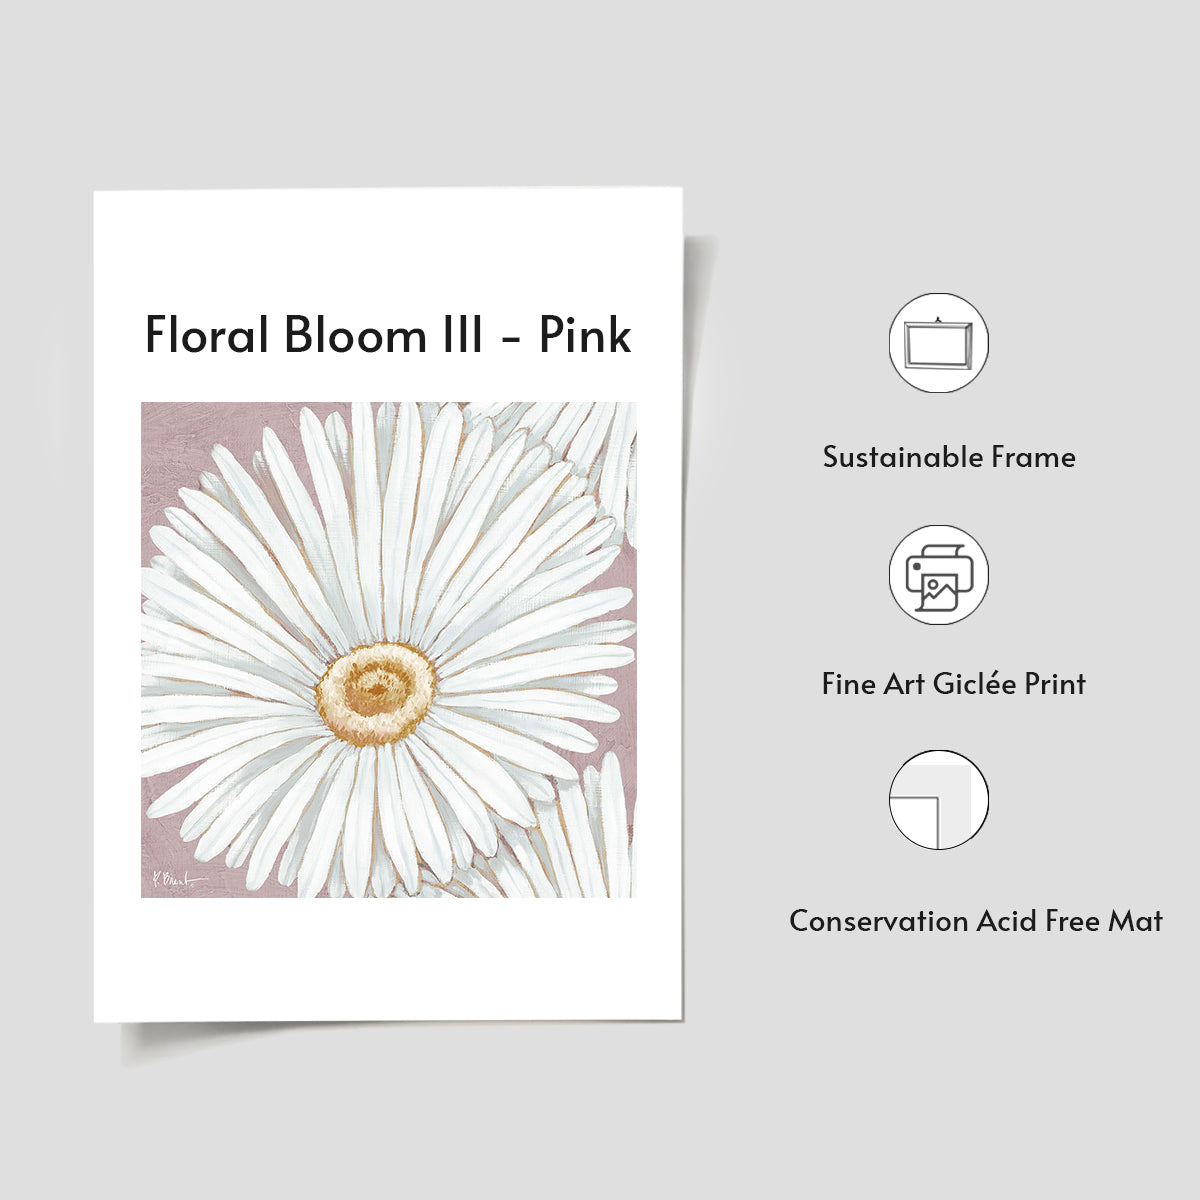 Floral Bloom III - Pink